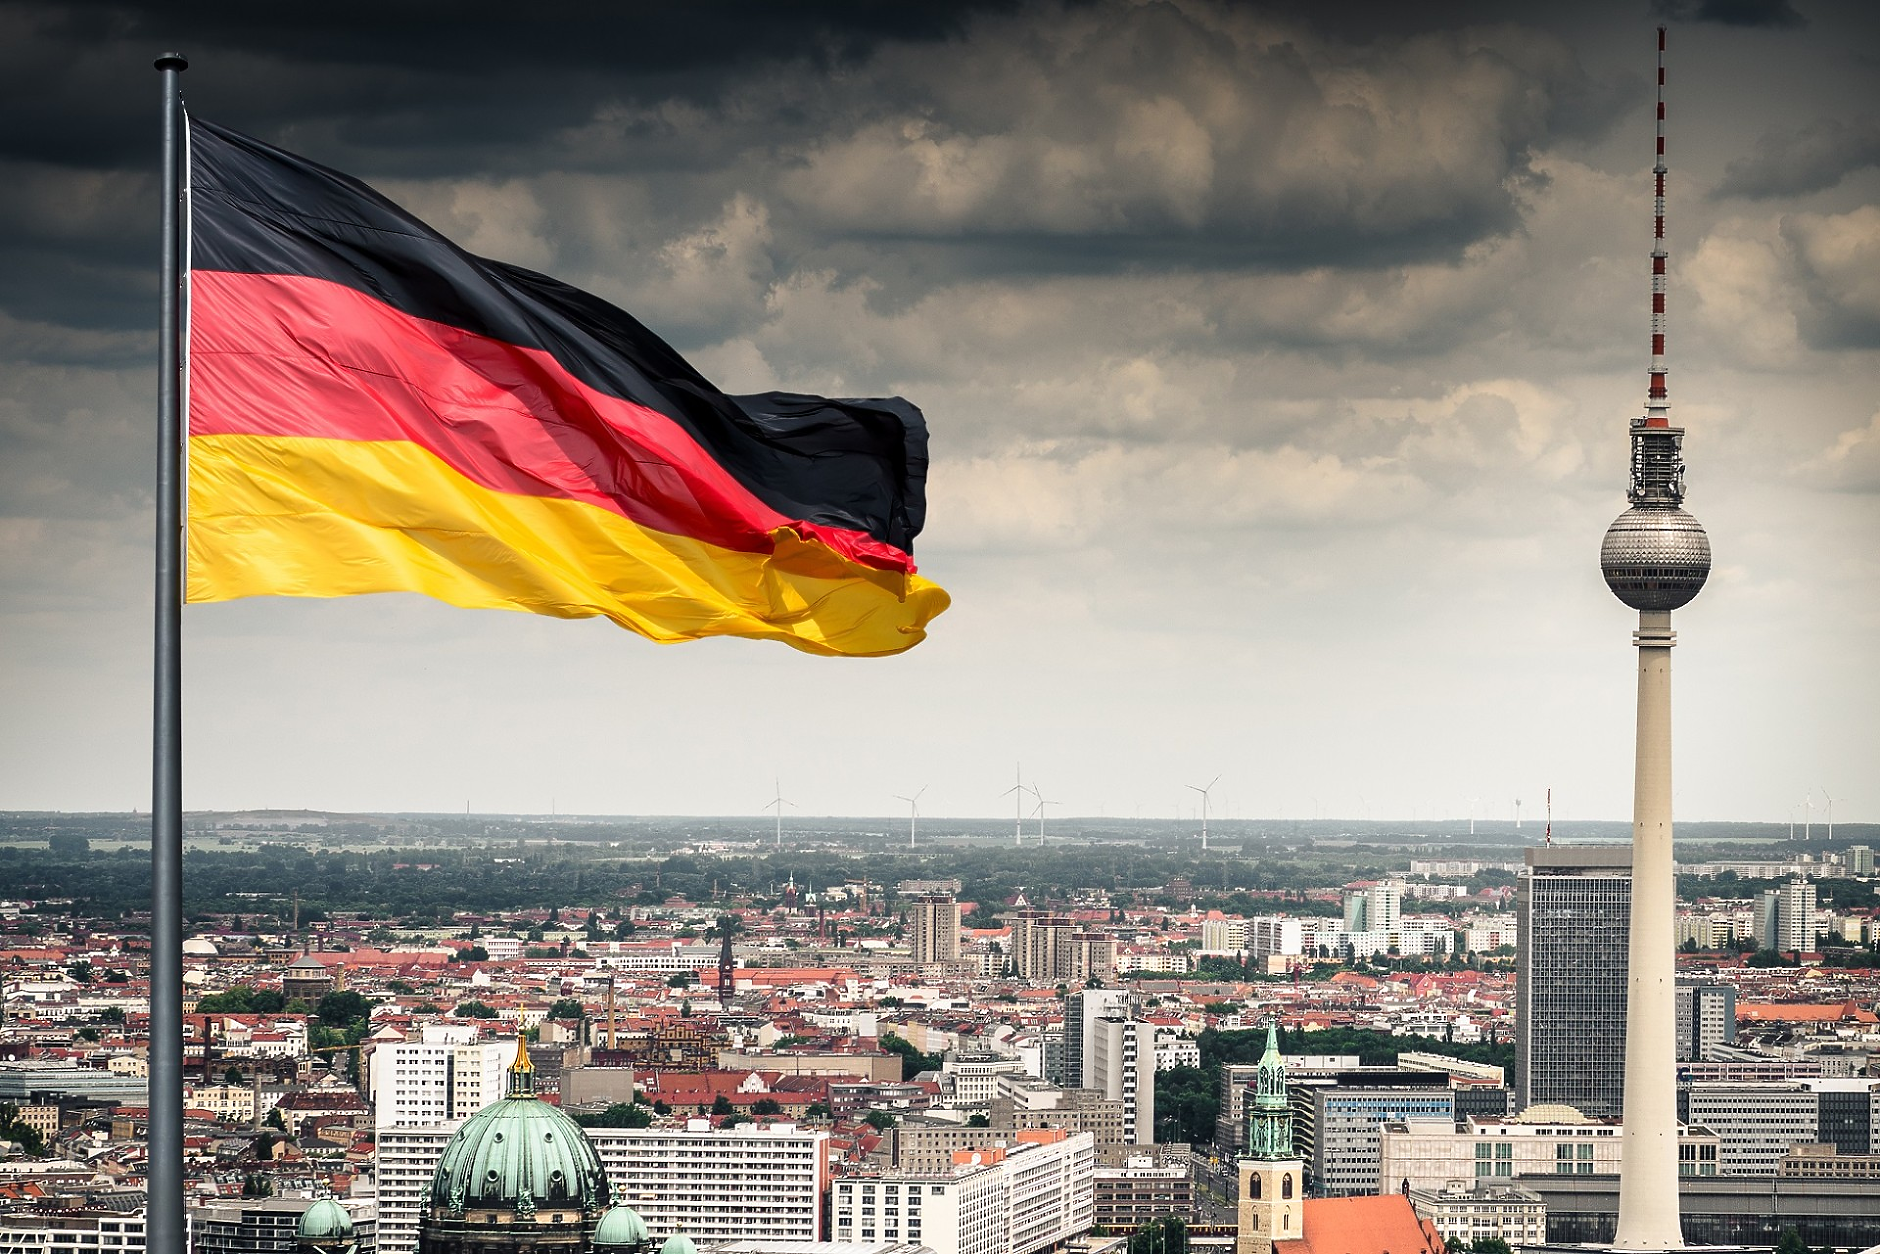 Кофас: Скок на корпоративните фалити в Германия с над 22%, тенденцията е трайна  